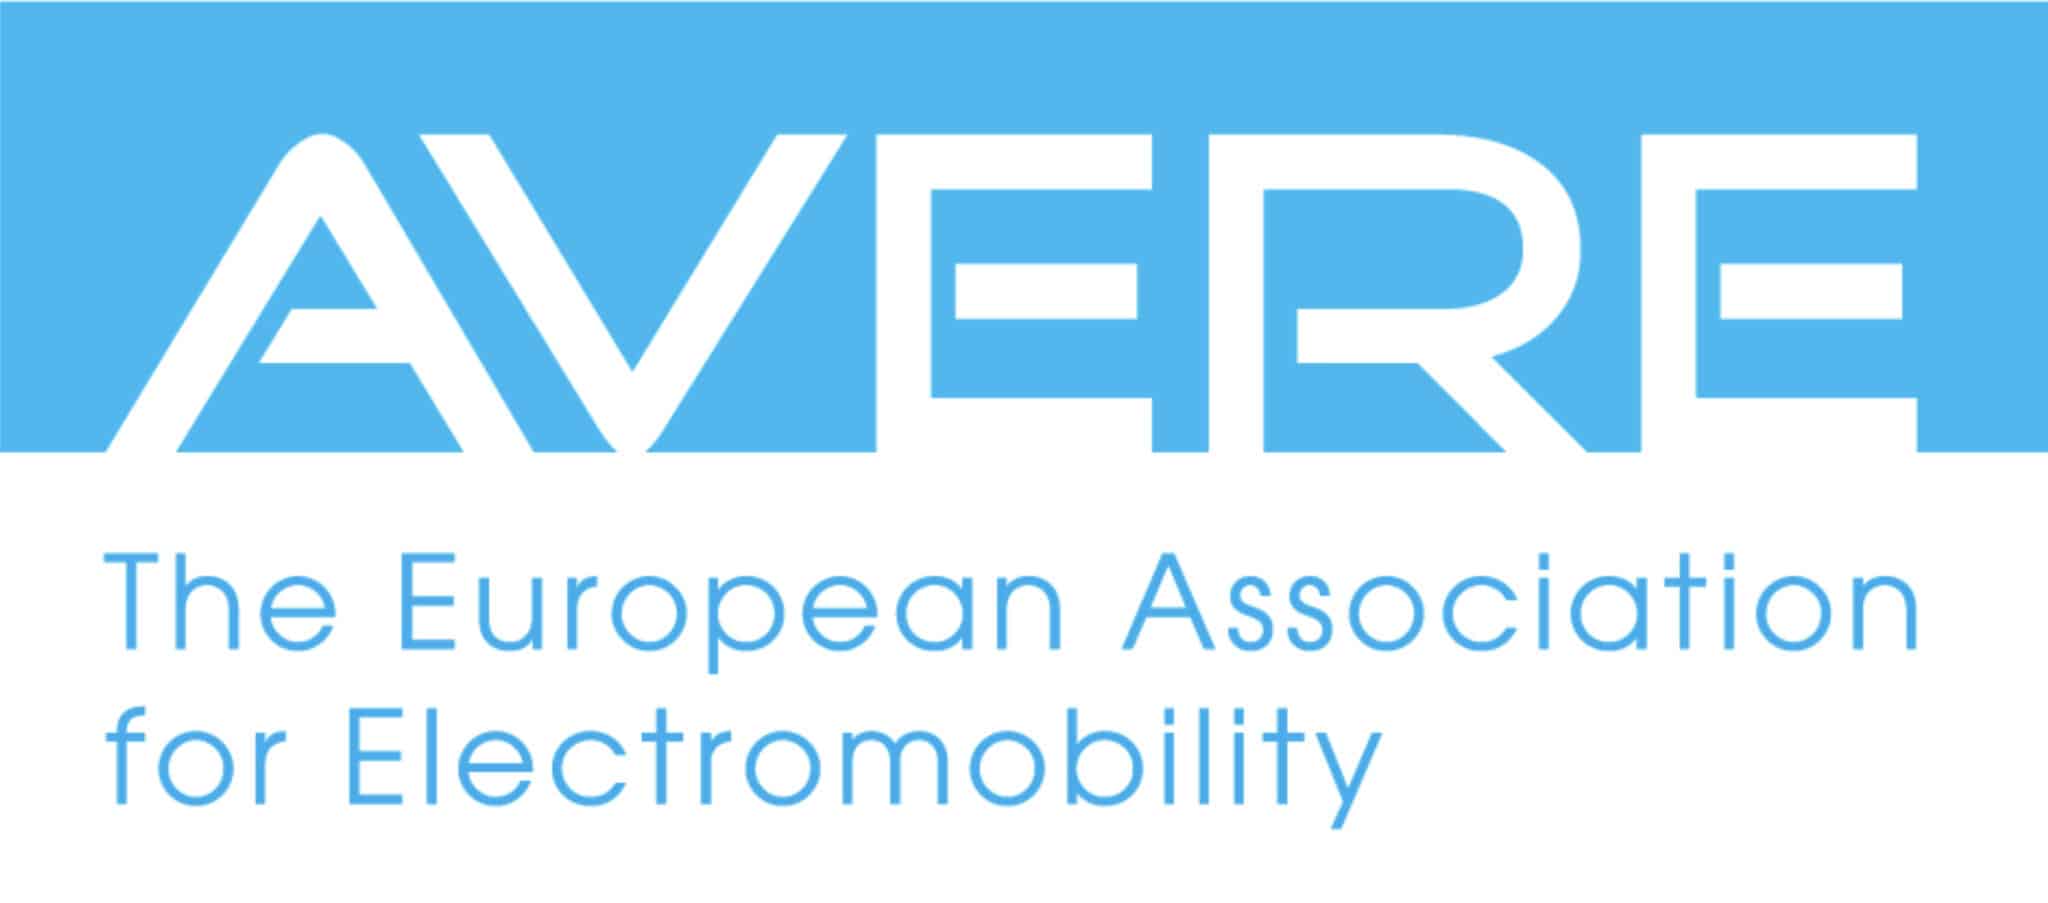 Livestream – EU Gesetze und Elektromobilität | AVERE logo scaled